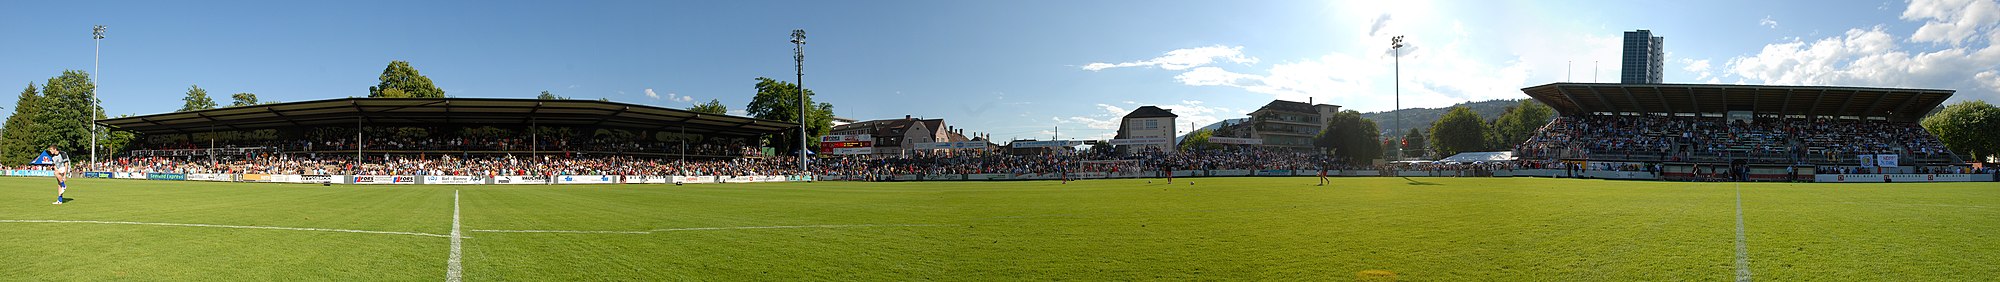 Panorama van stadion Gurzelen tijdens de promotiewedstrijd tegen SC Cham in juni 2007